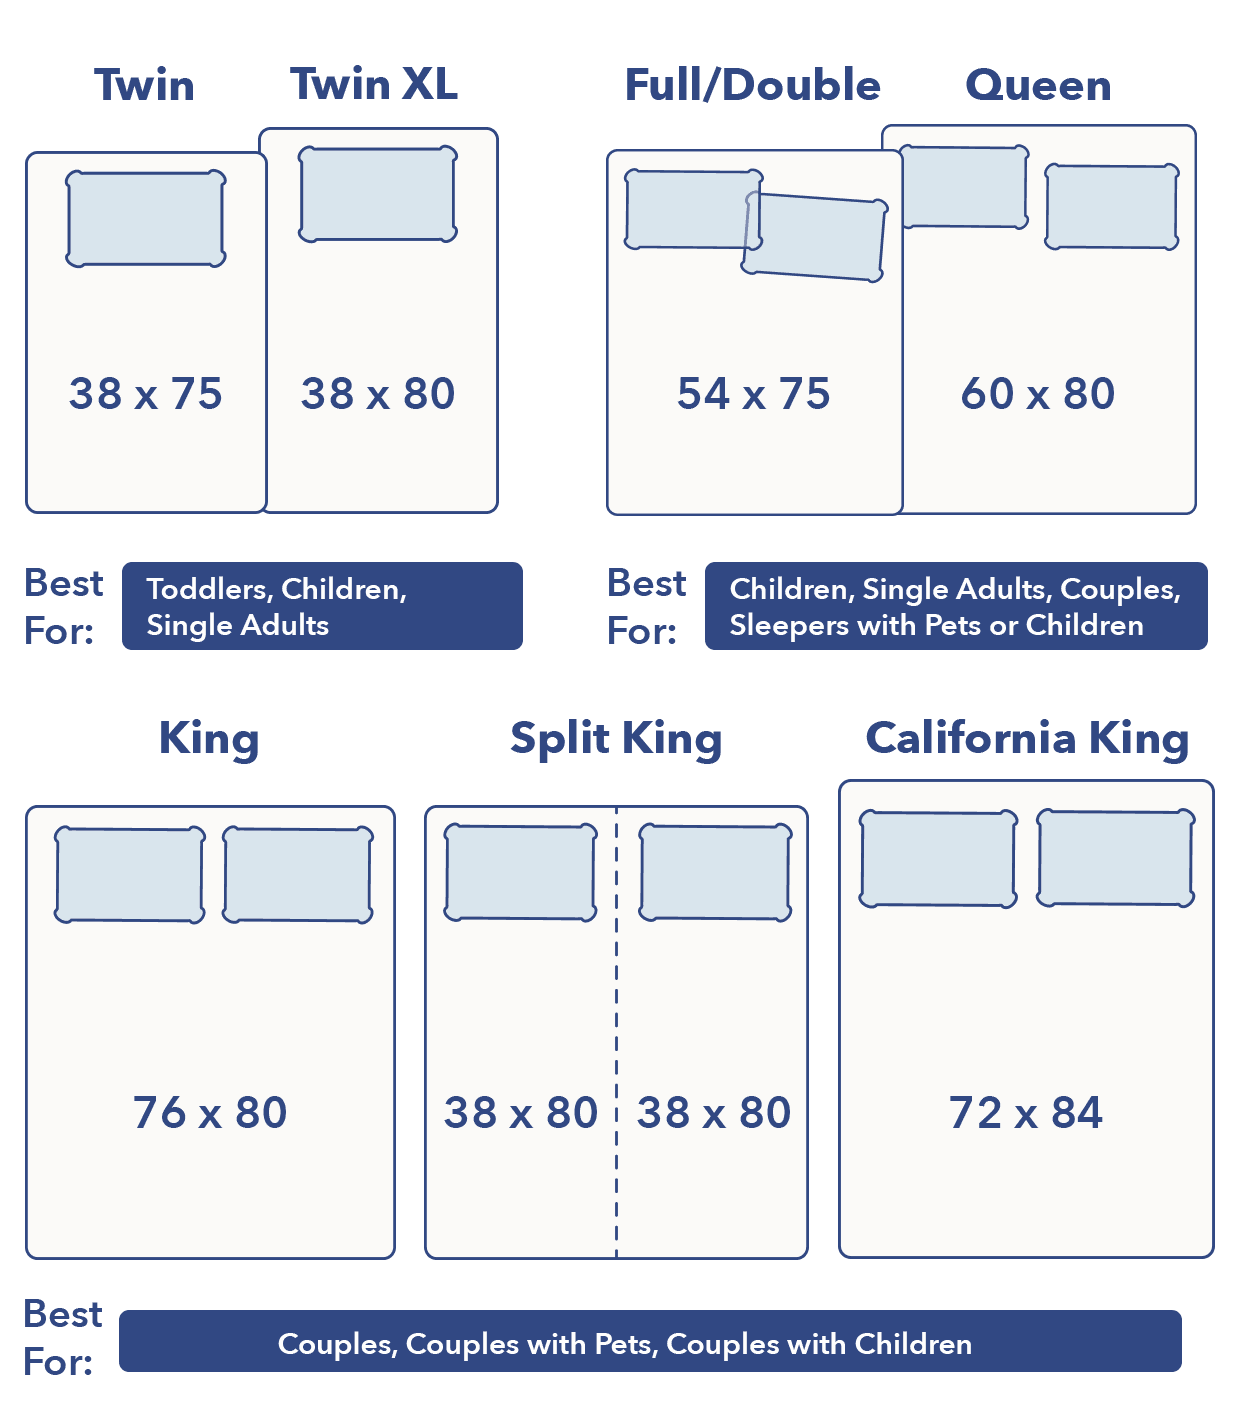 5 вариантов кровати кинг сайз с размерами